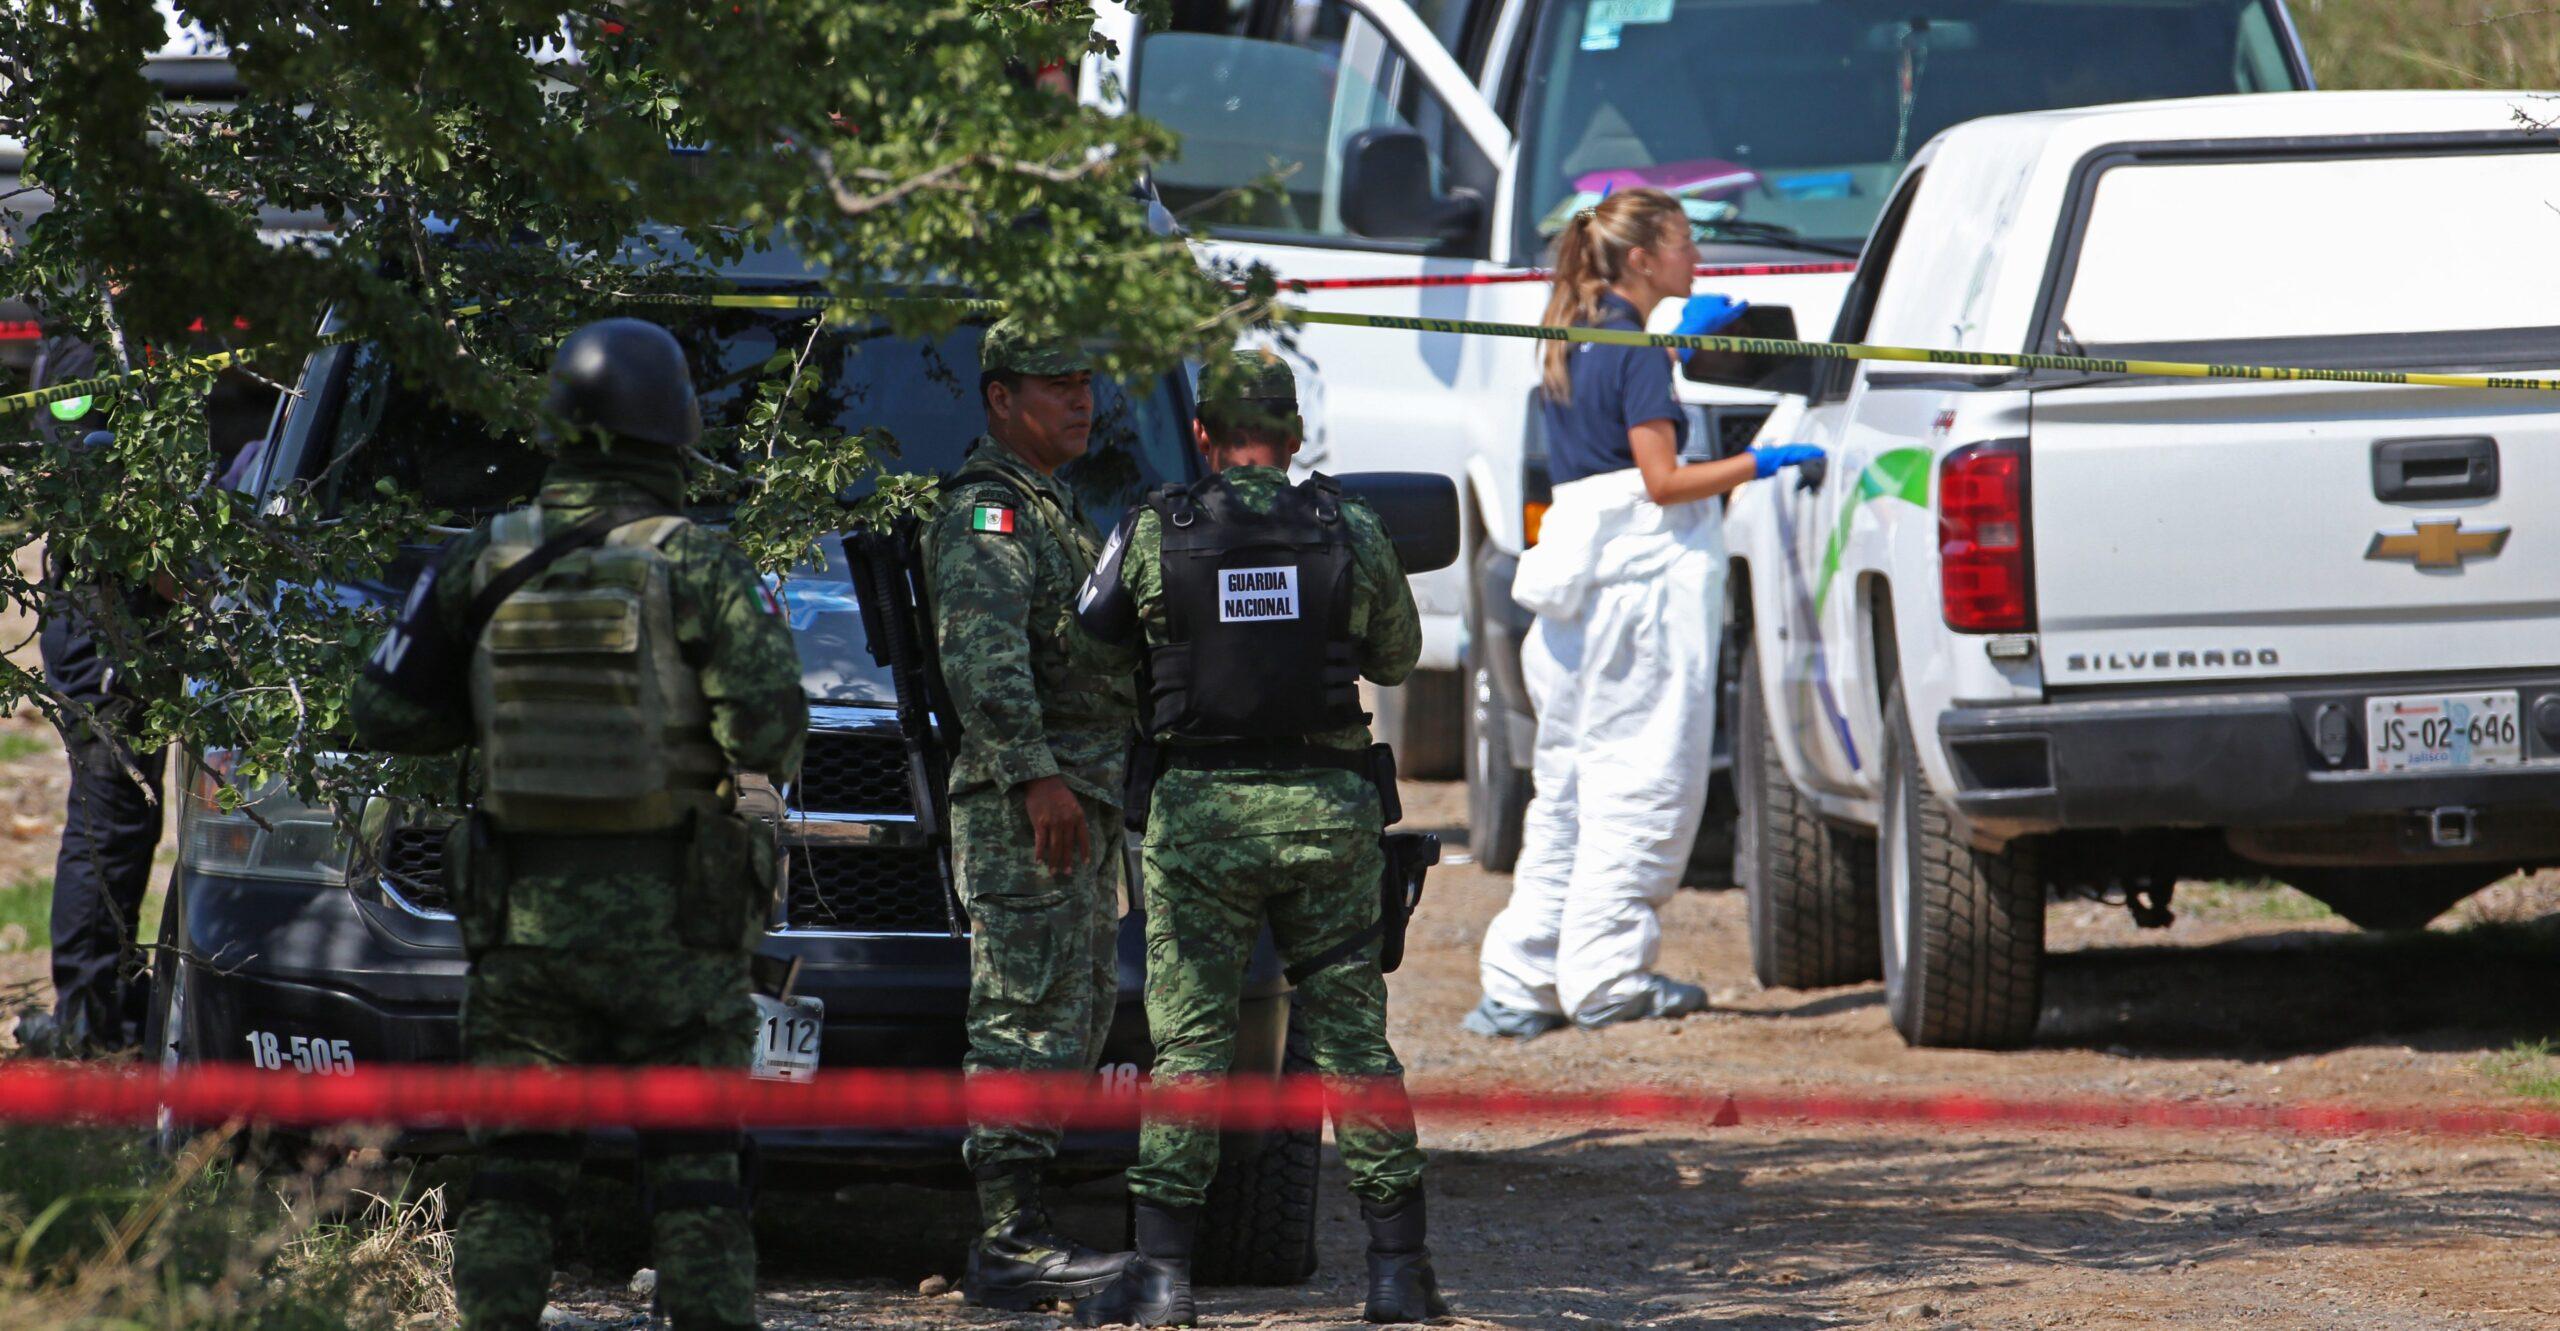 Hallan 7 cadáveres con impactos de bala dentro de vehículos en Tonalá, Jalisco